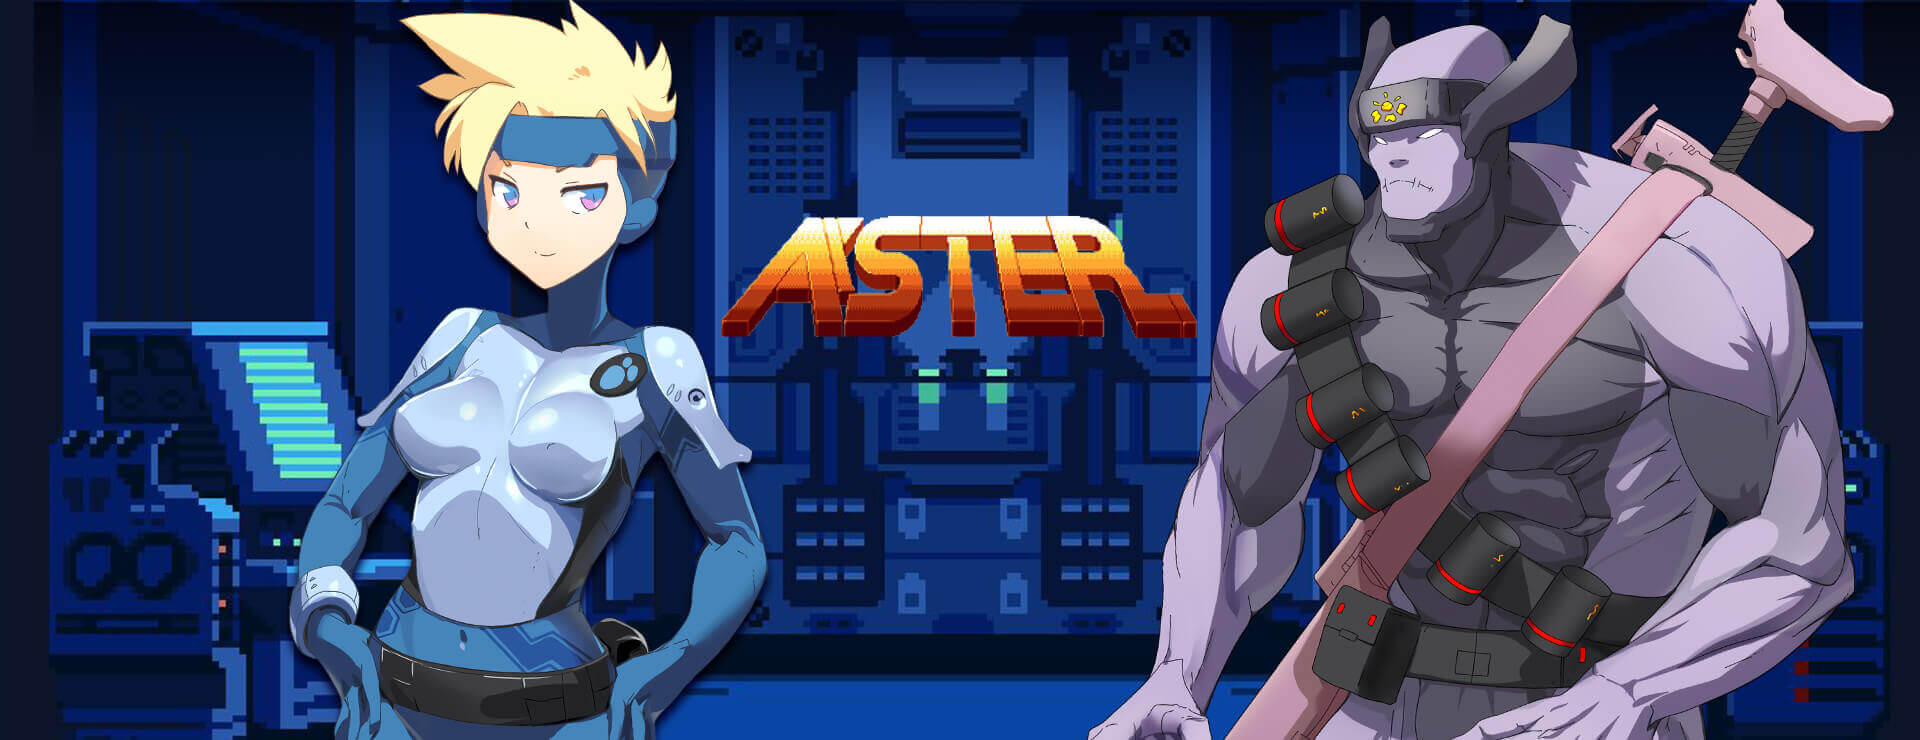 Aster - Action Adventure Spiel